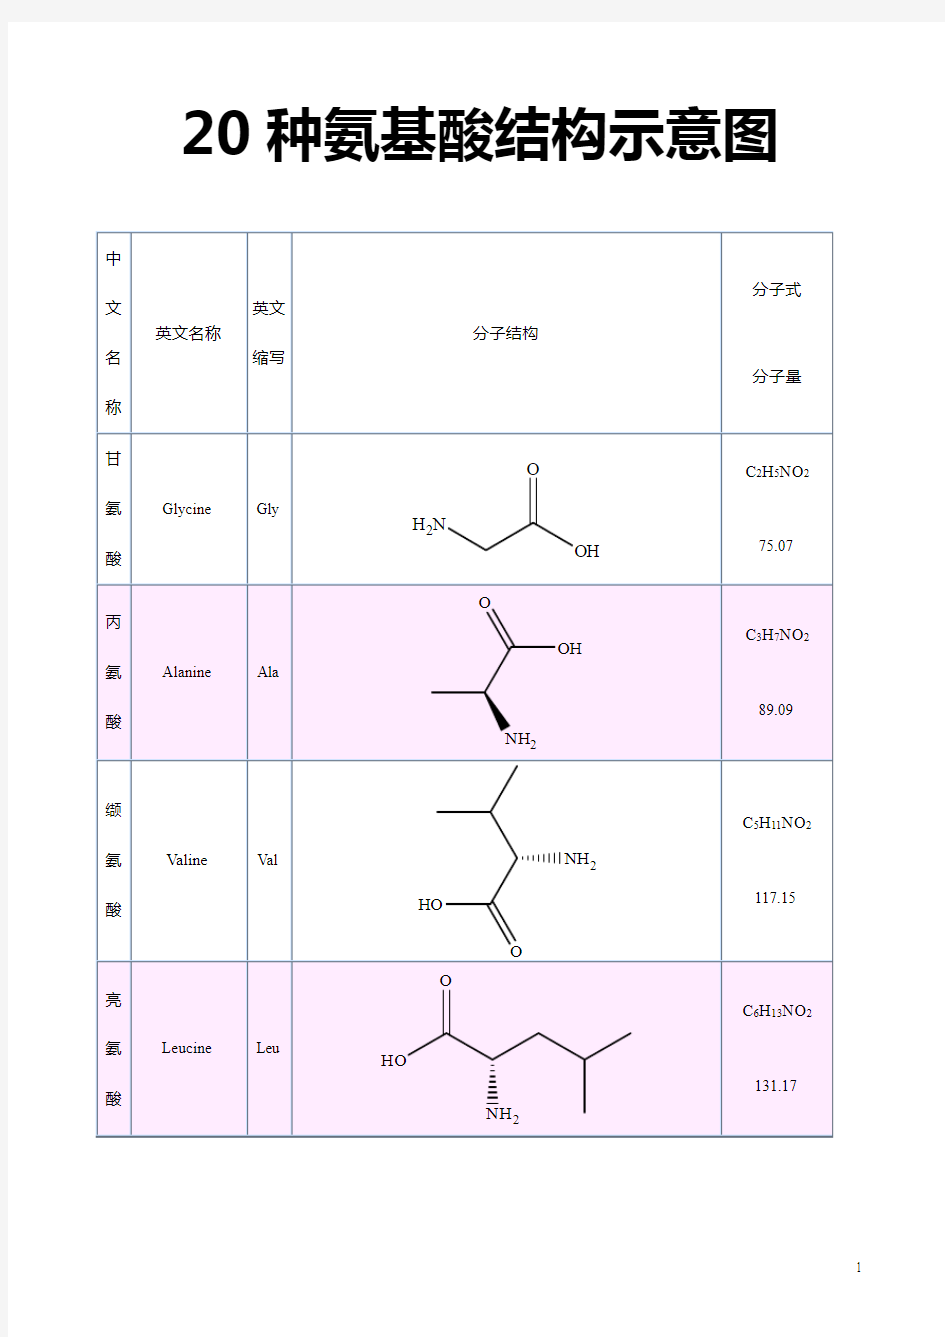 20种氨基酸结构示意图